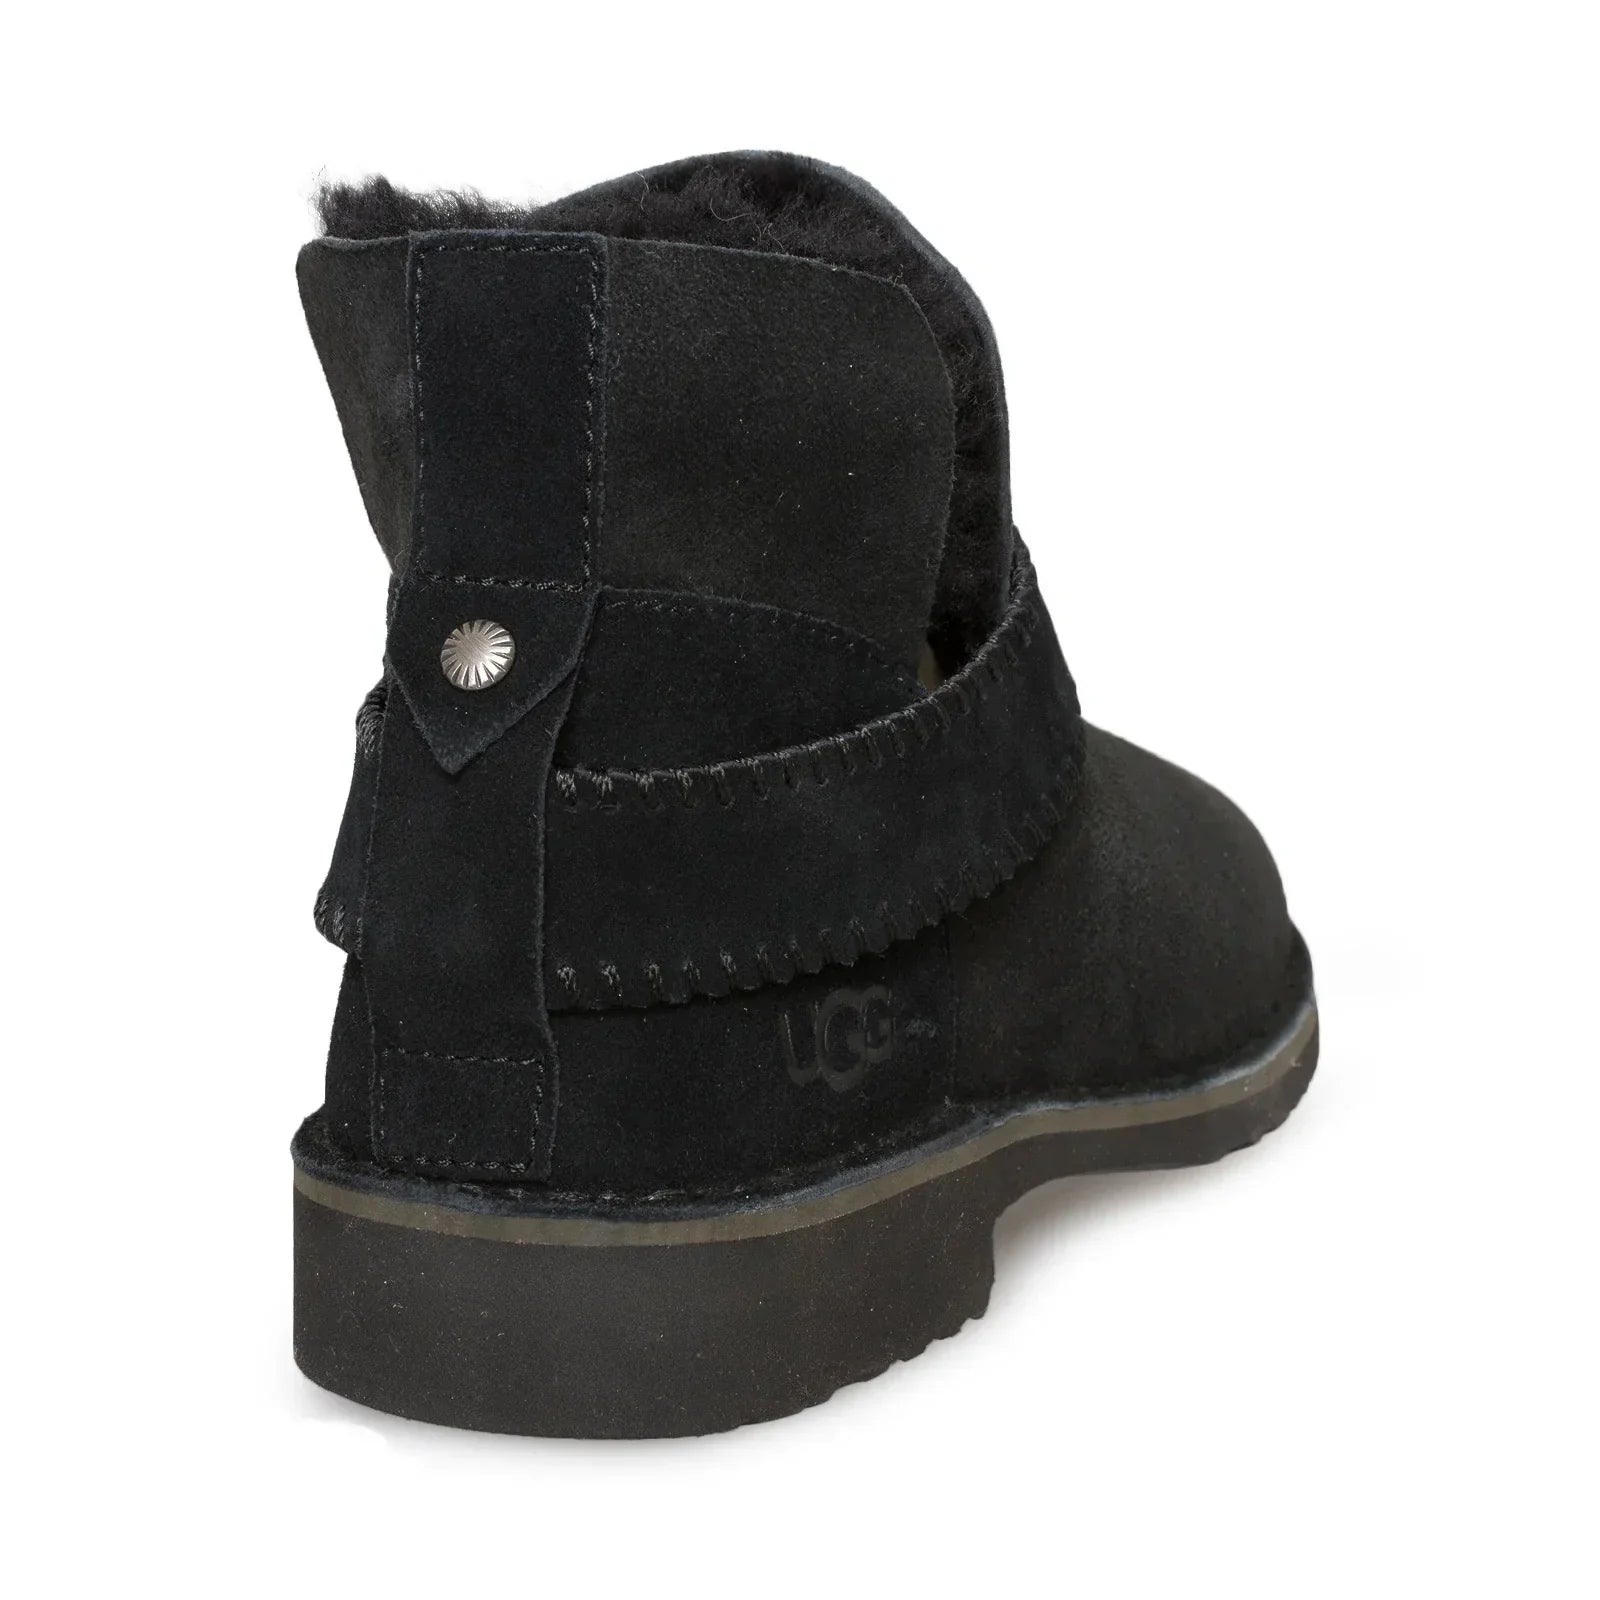 UGG Mckay Black Boots - Women's